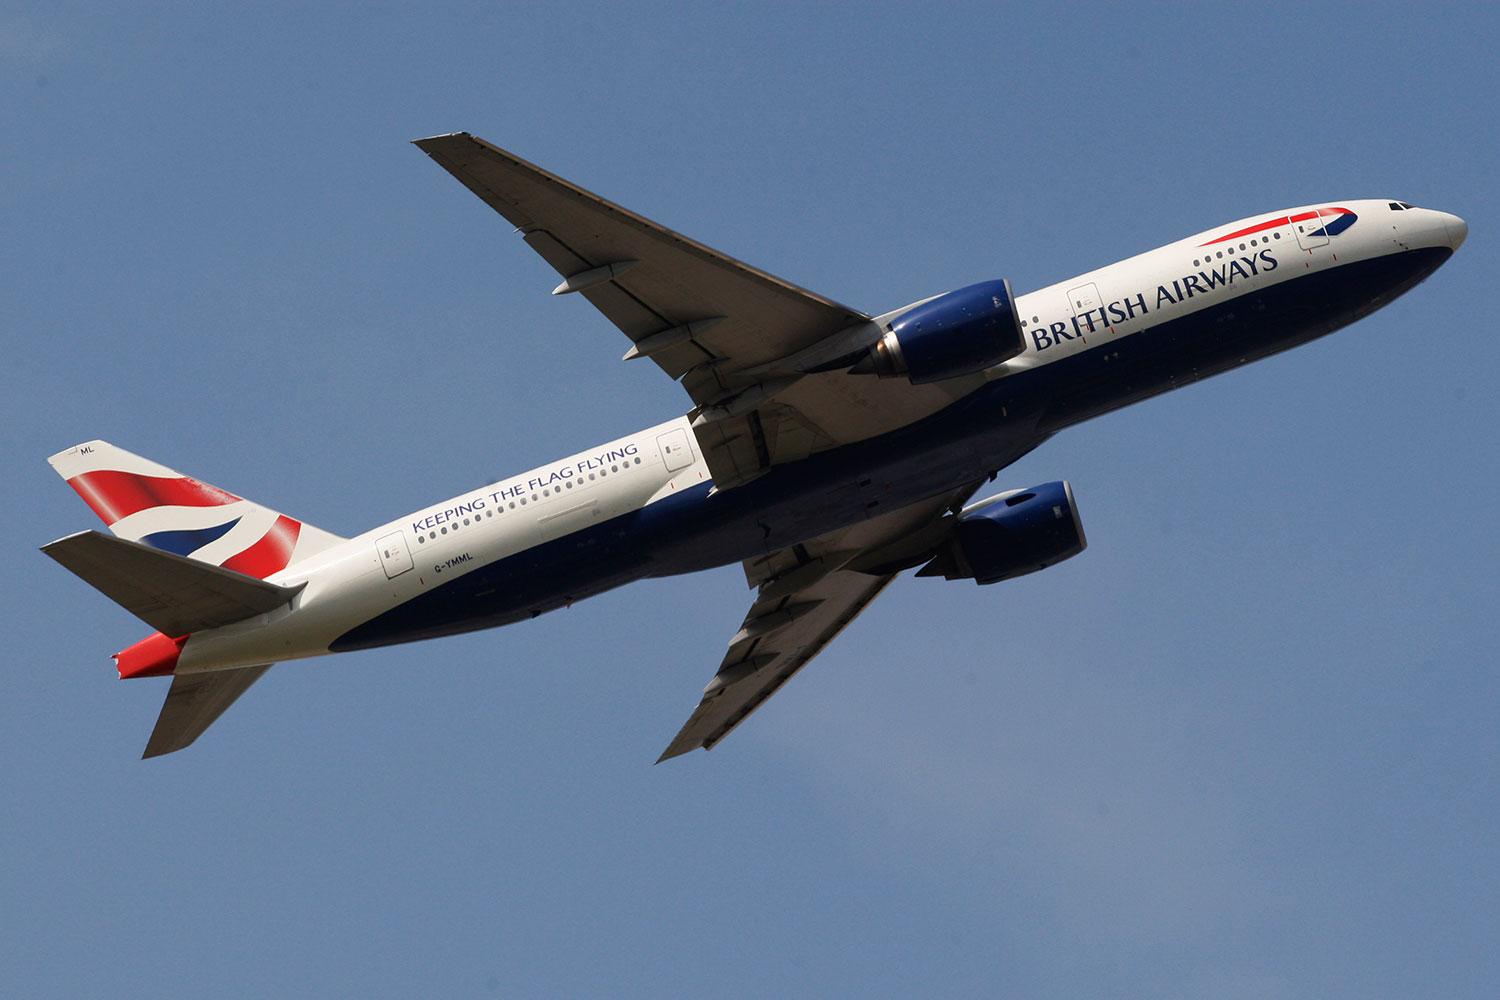 Nu stämmer det drabbade paret flygbolaget British Airways.